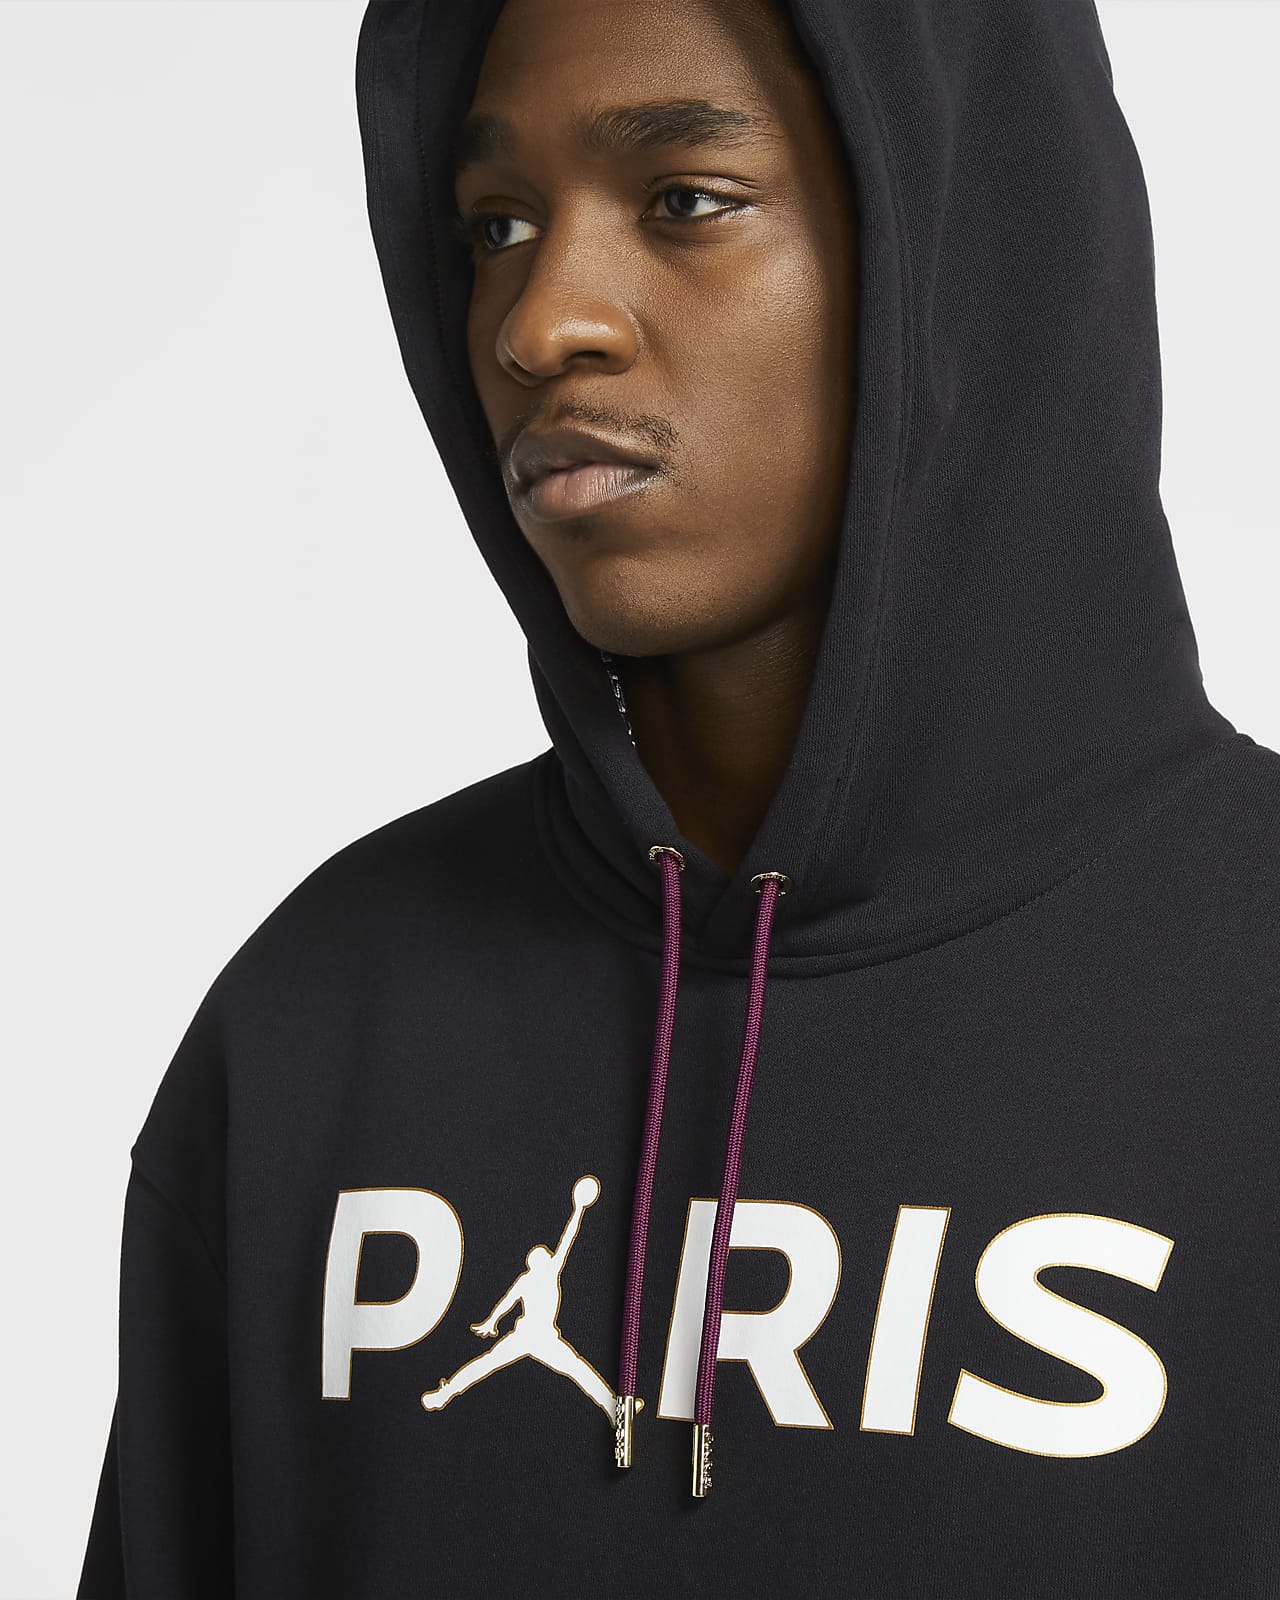 Nike公式 パリ サンジェルマン メンズ フリース プルオーバー パーカー オンラインストア 通販サイト